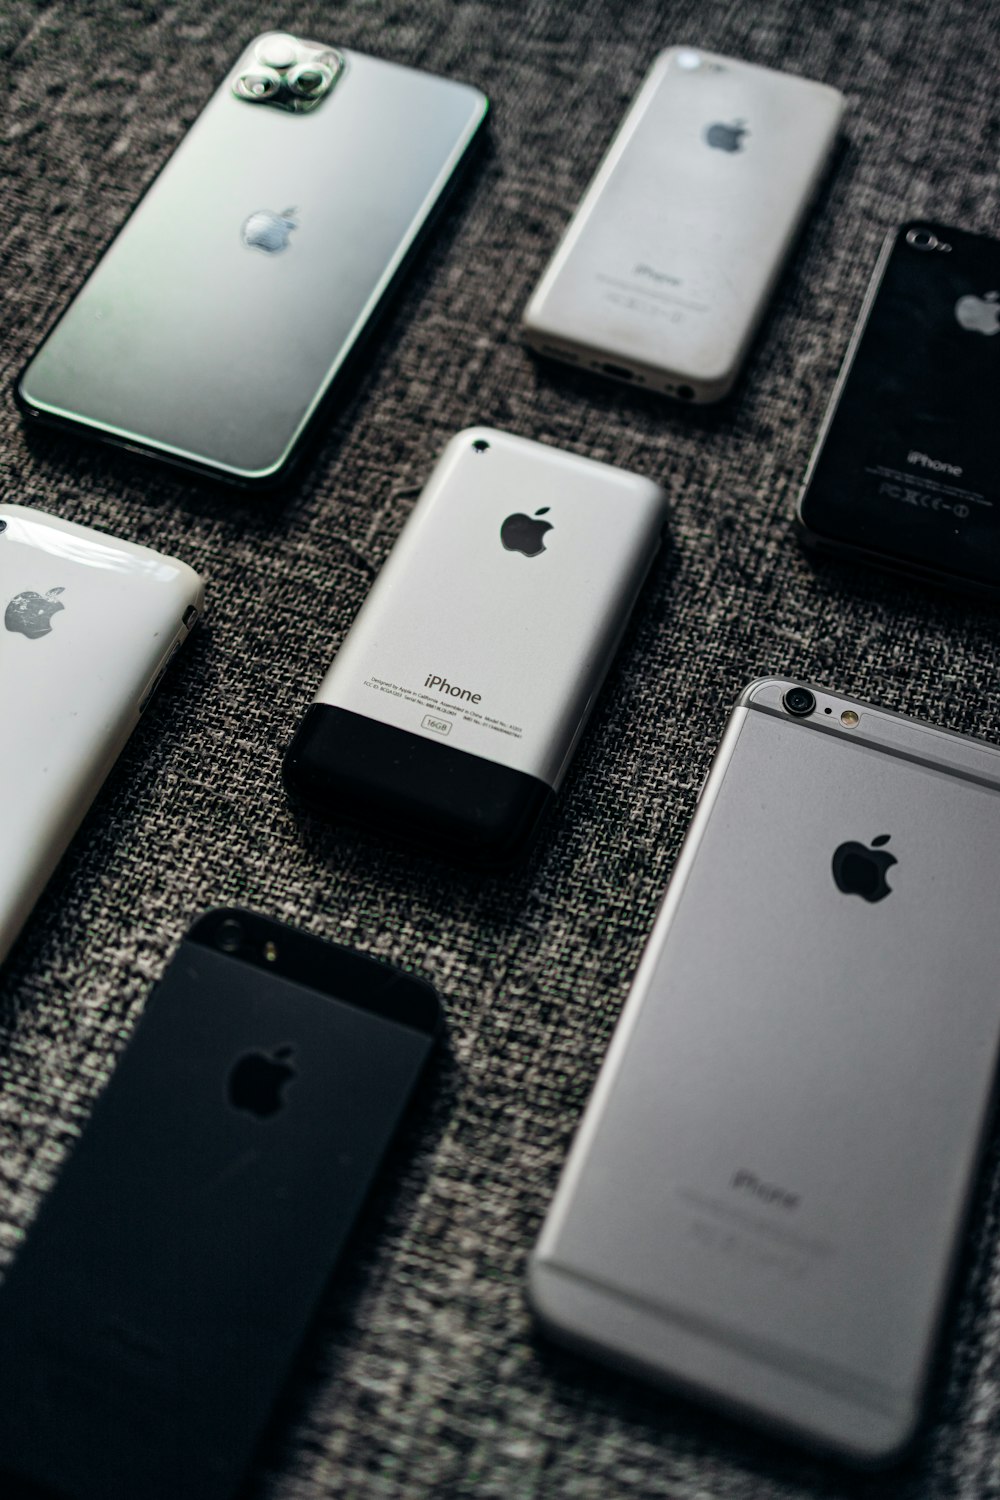 iPhone 6 argenté et iPhone 6 gris sidéral